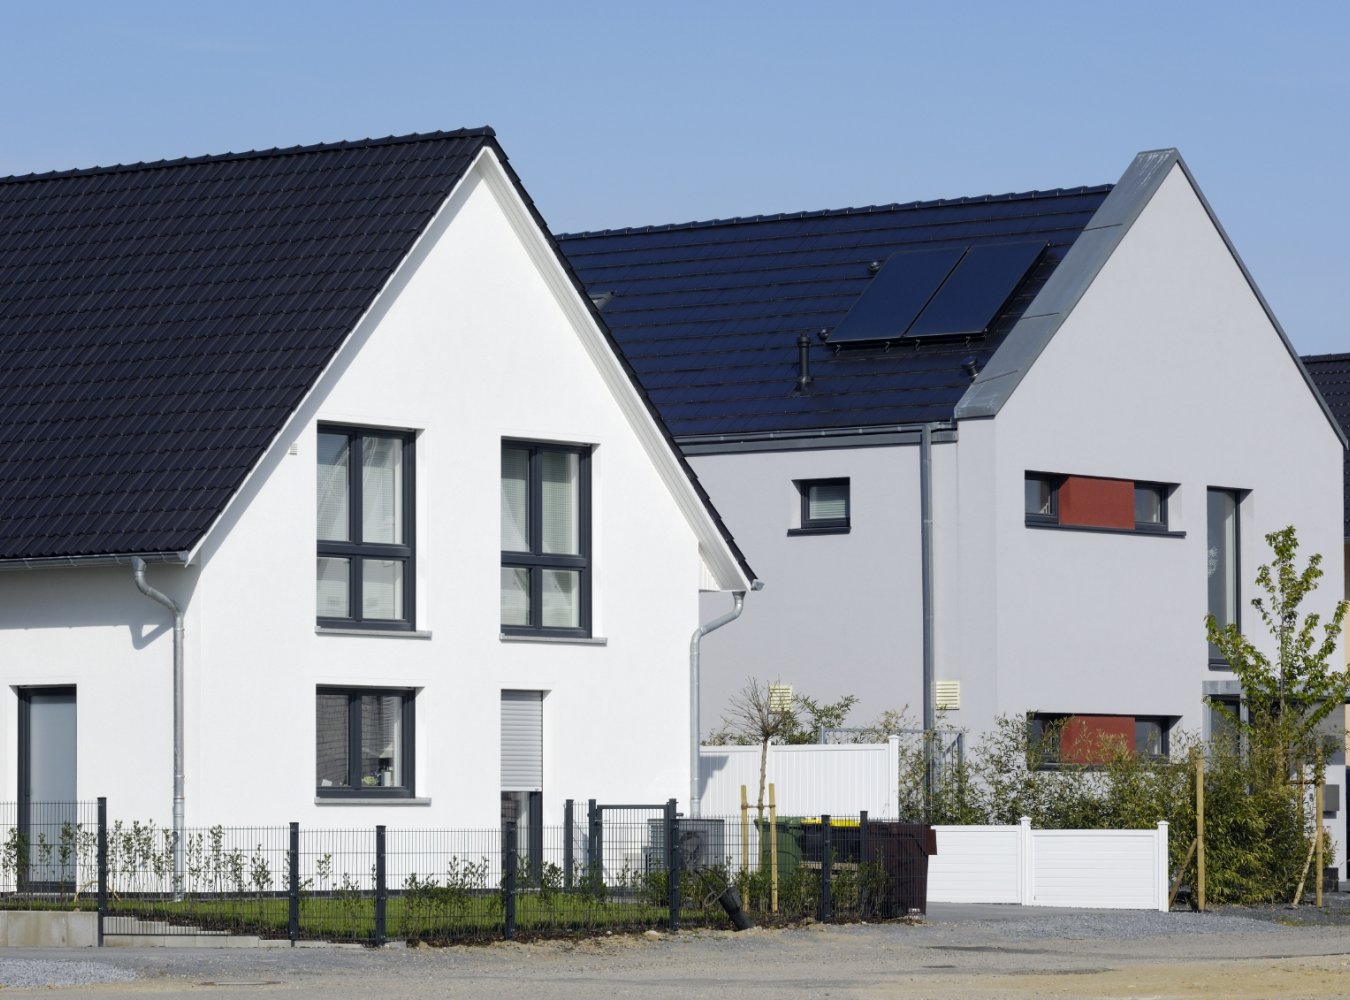 Nordrhein-Westfalen verlängert das Zuschussprogramm für Eigentümer